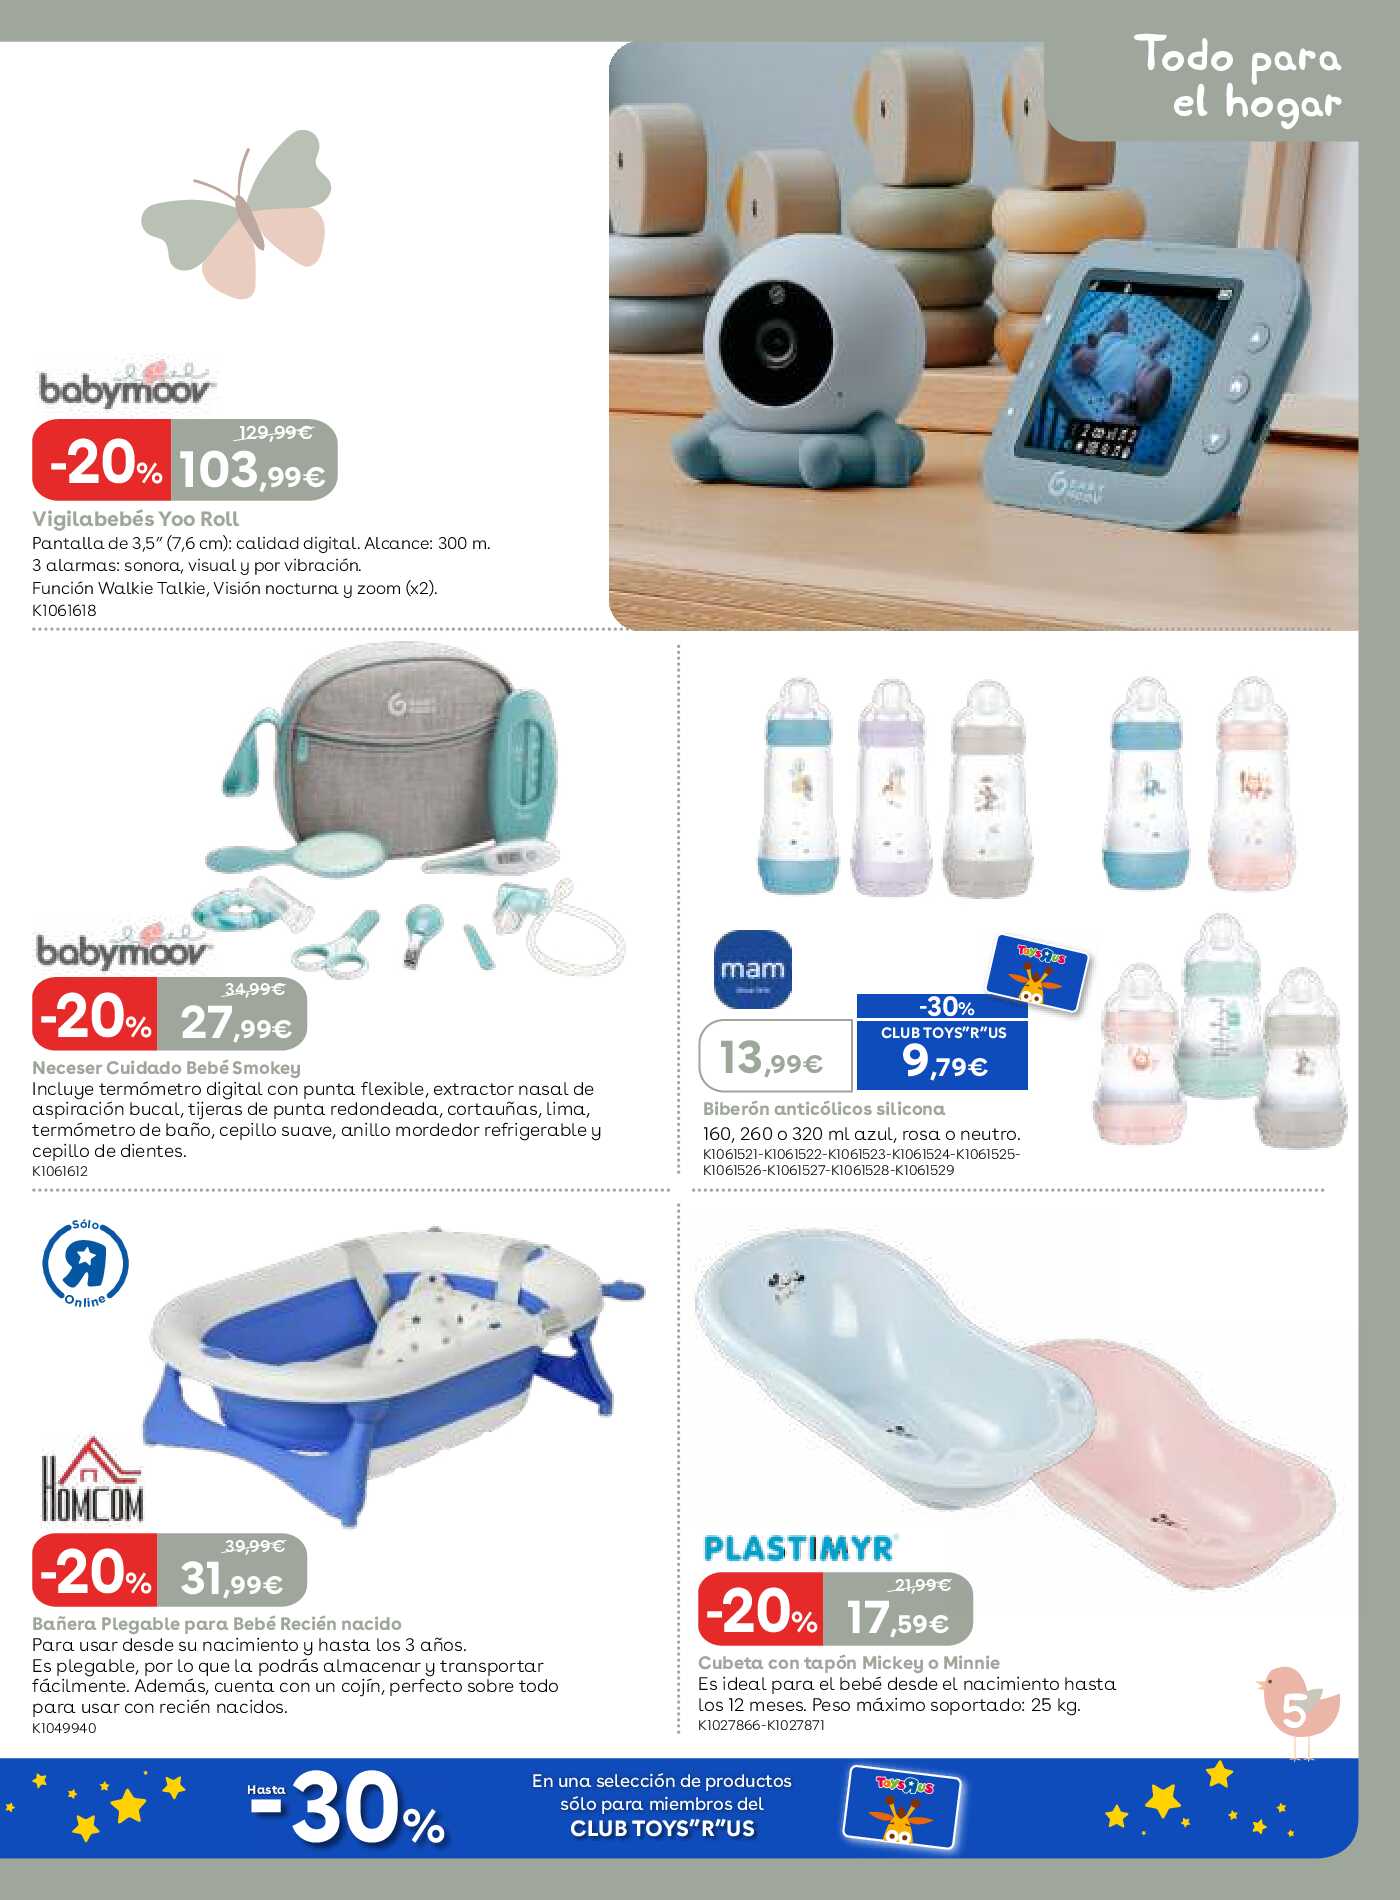 Esenciales para tu bebé Toys R Us. Página 05